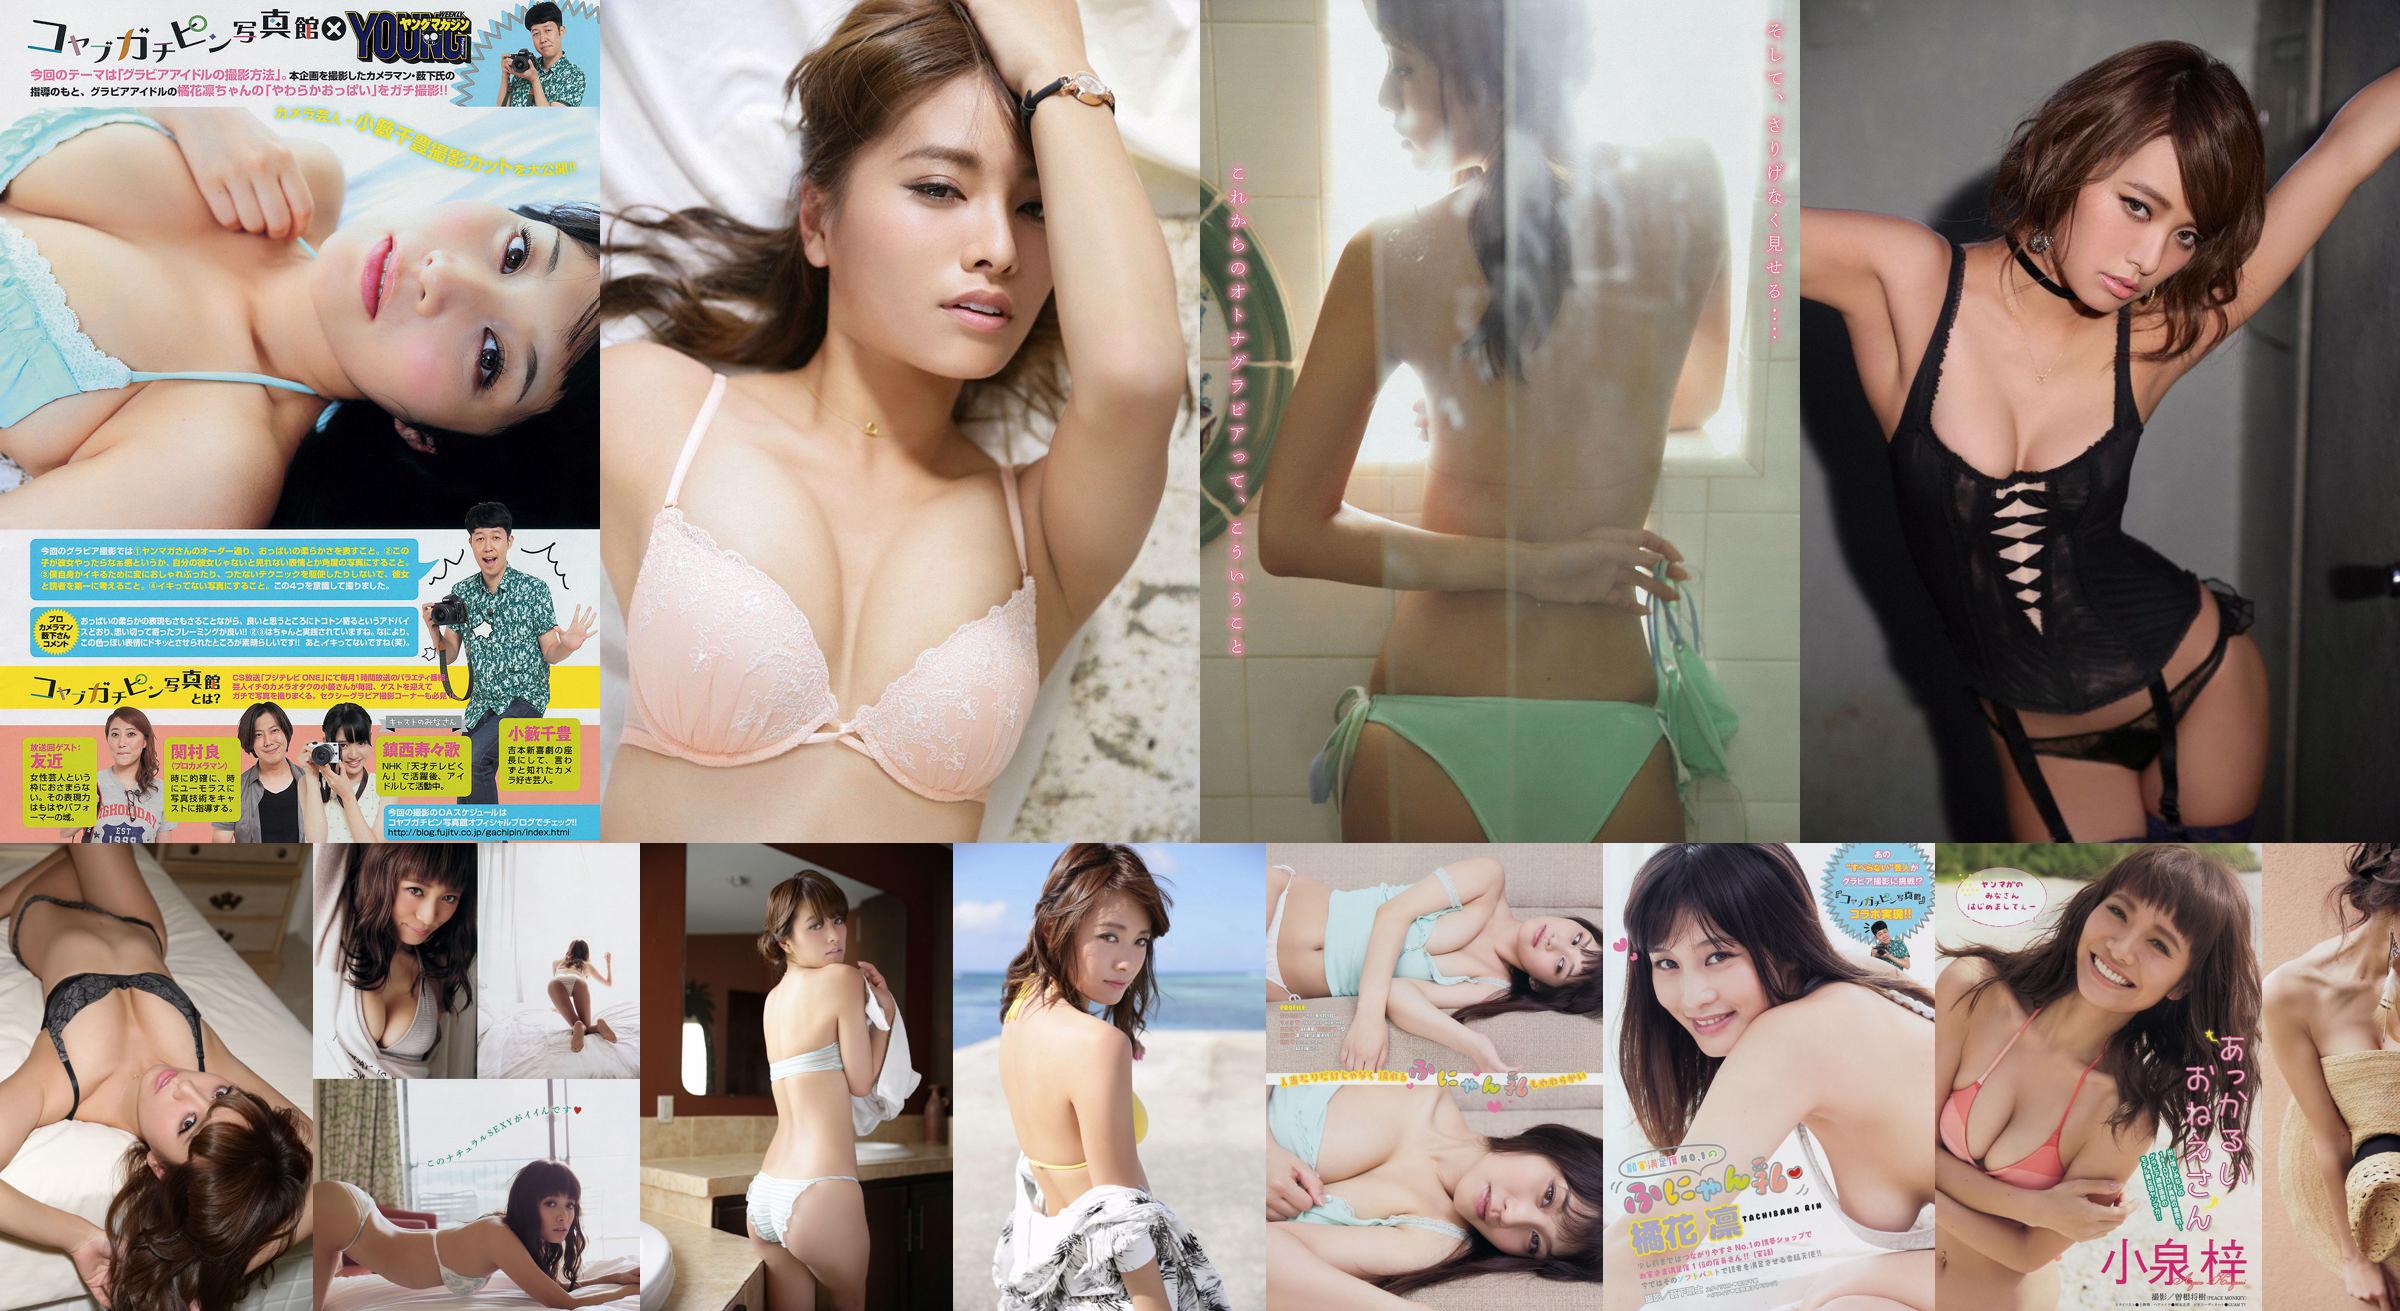 [Young Magazine] Azusa Koizumi Tachibana Rin 2014 No.43 Photo Magazine No.15912d Pagina 1